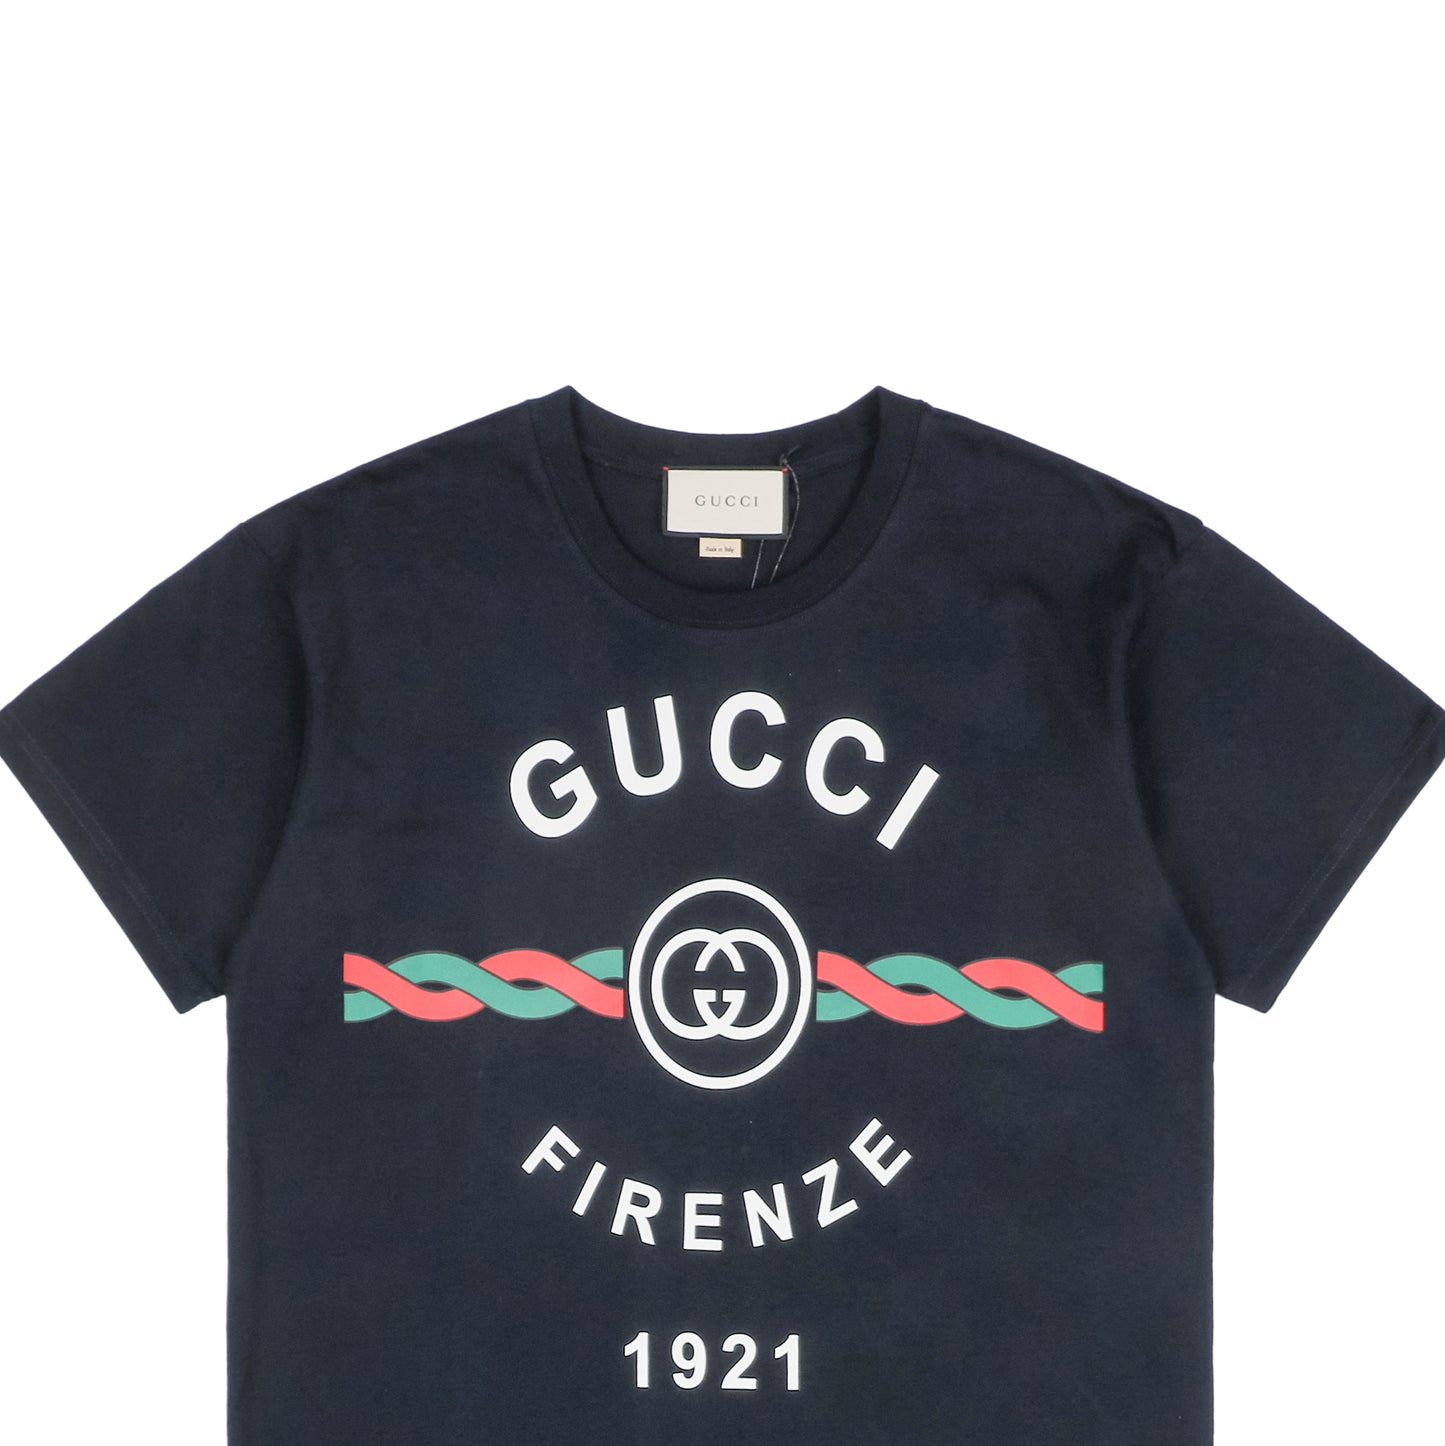 Gucc1 Cotton Jersey 'Gucci Firenze 1921' Dark Blue  T-Shirt